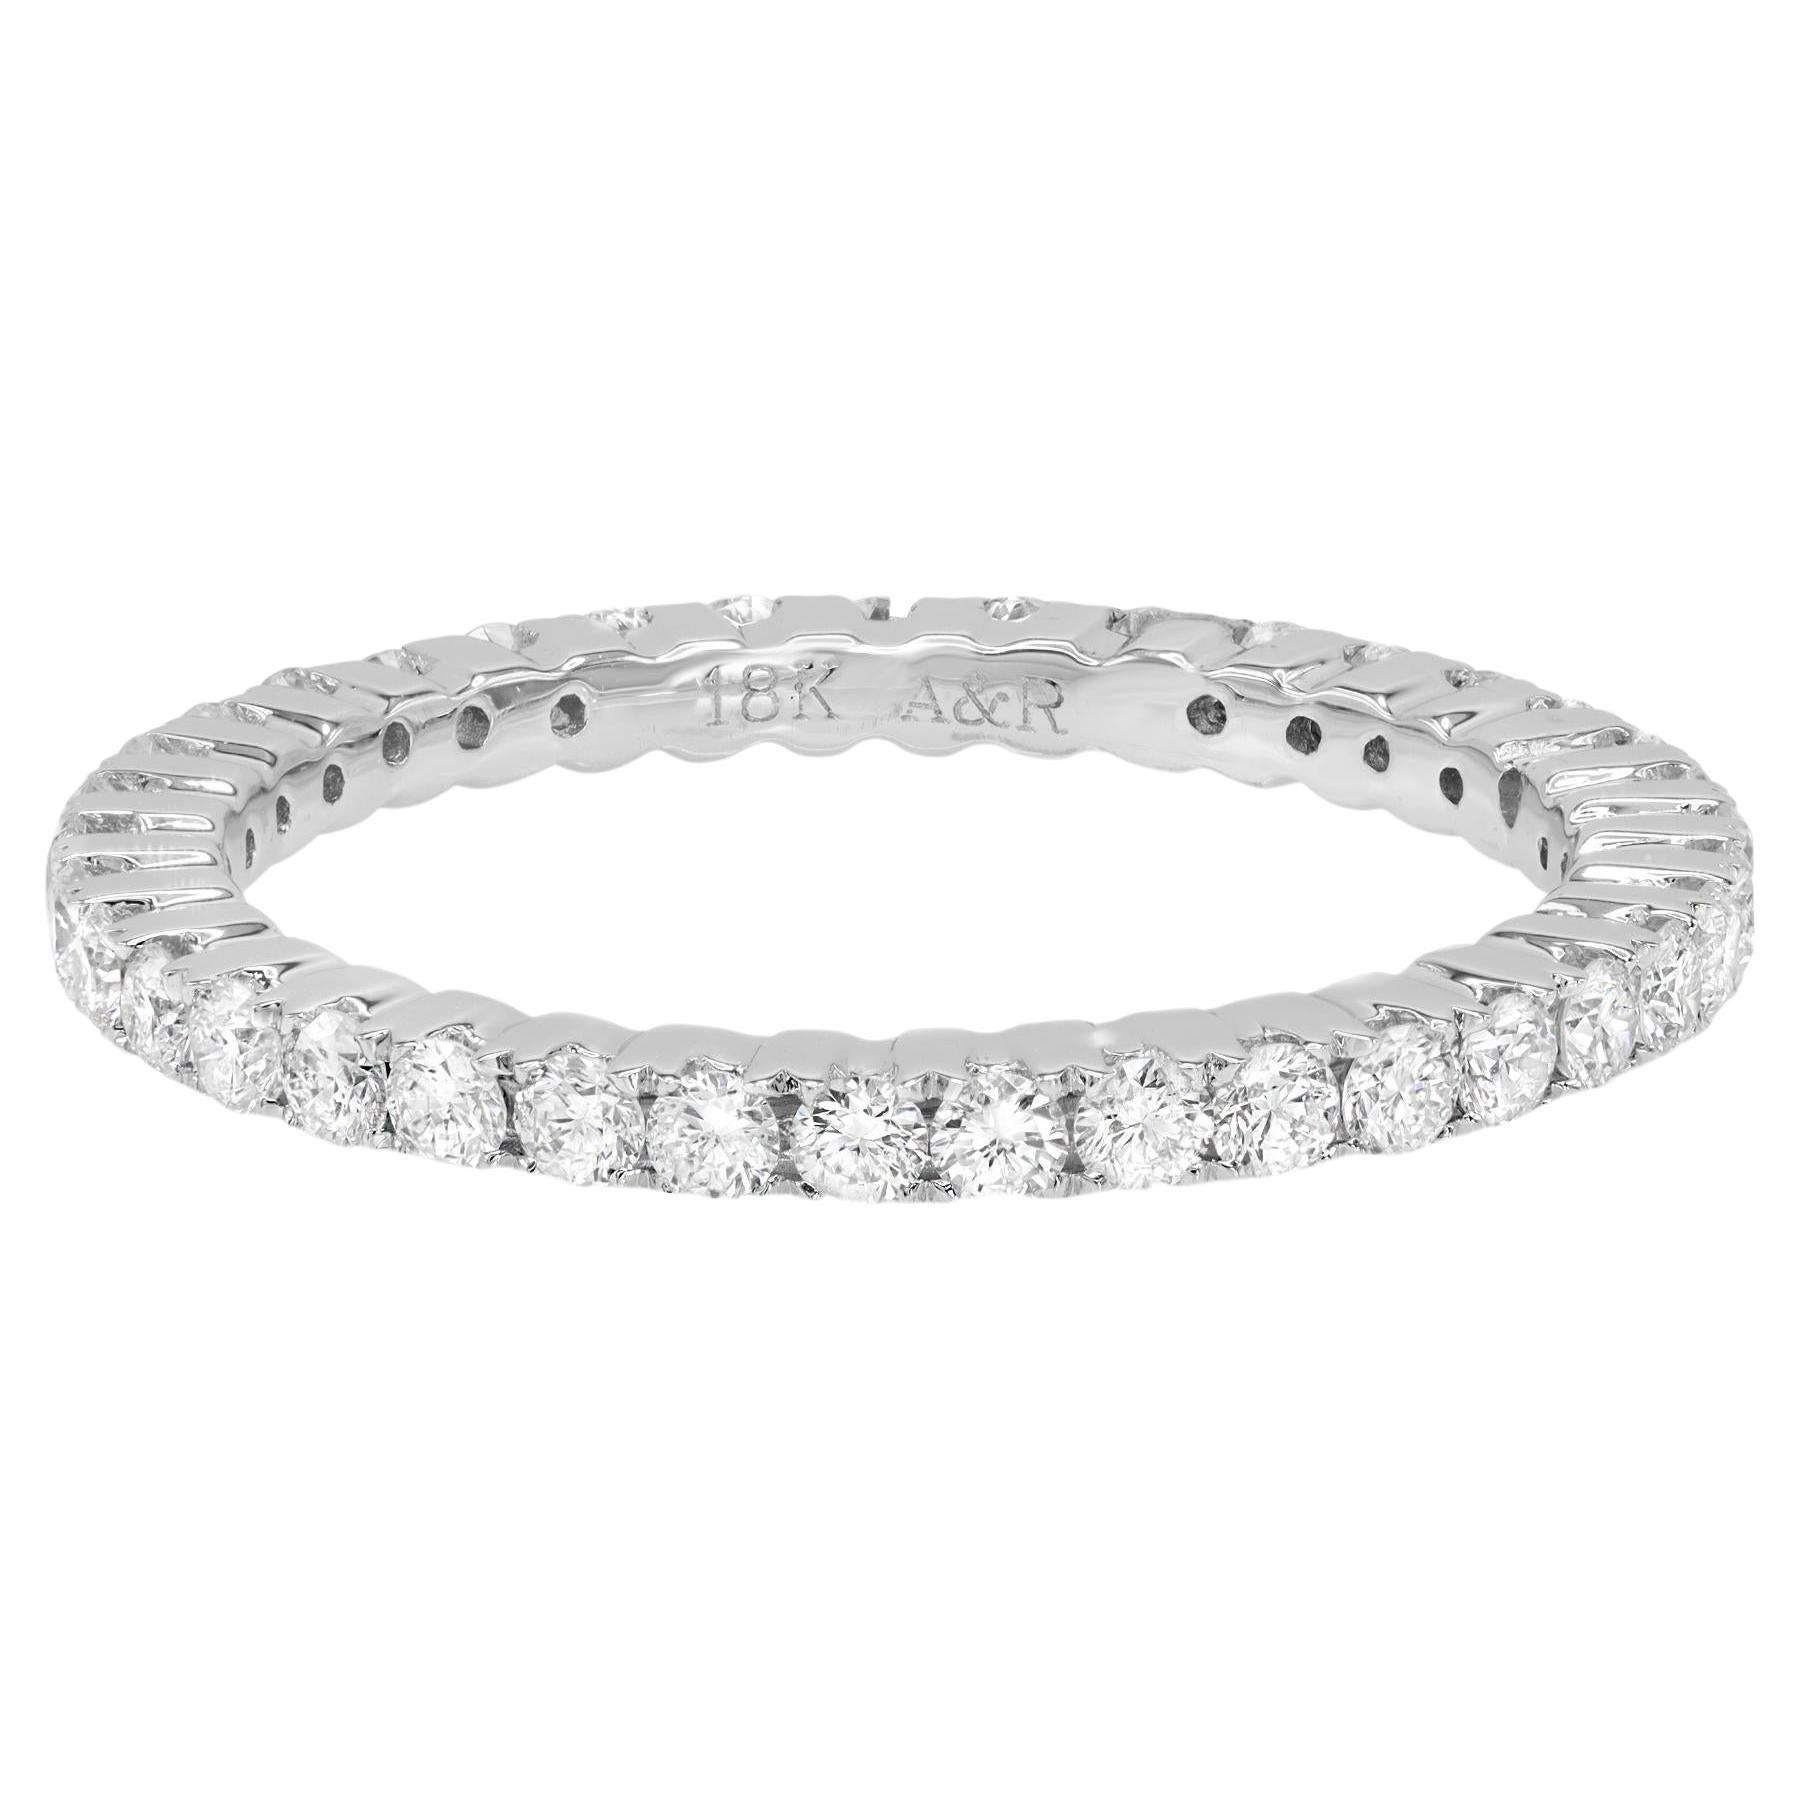 Rachel Koen Eternity Natural Diamond Wedding Band Ring 18K White Gold 0.93cttw For Sale